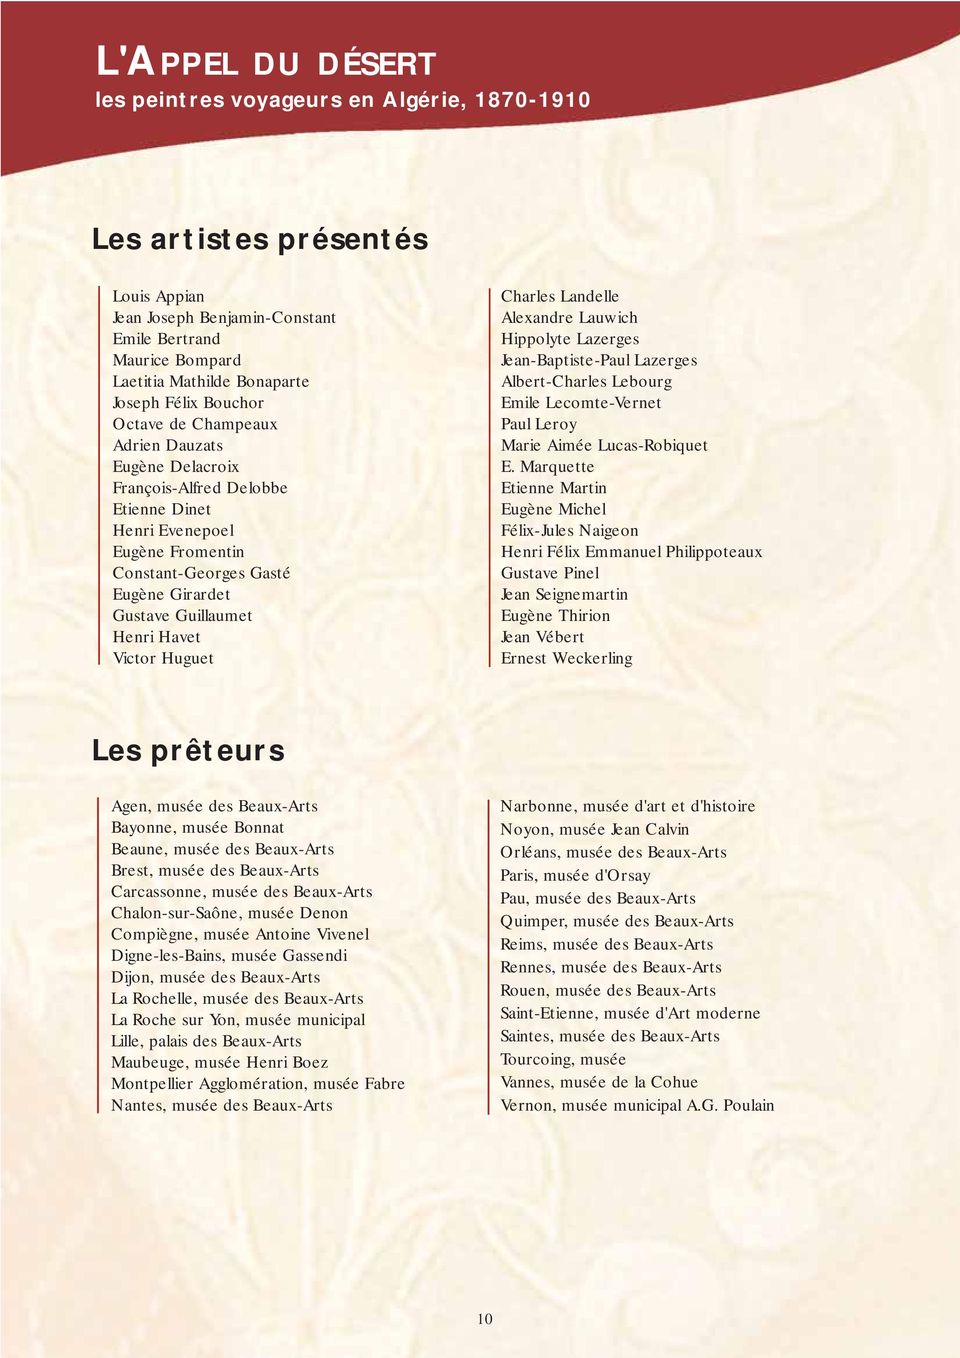 Lazerges Jean-Baptiste-Paul Lazerges Albert-Charles Lebourg Emile Lecomte-Vernet Paul Leroy Marie Aimée Lucas-Robiquet E.